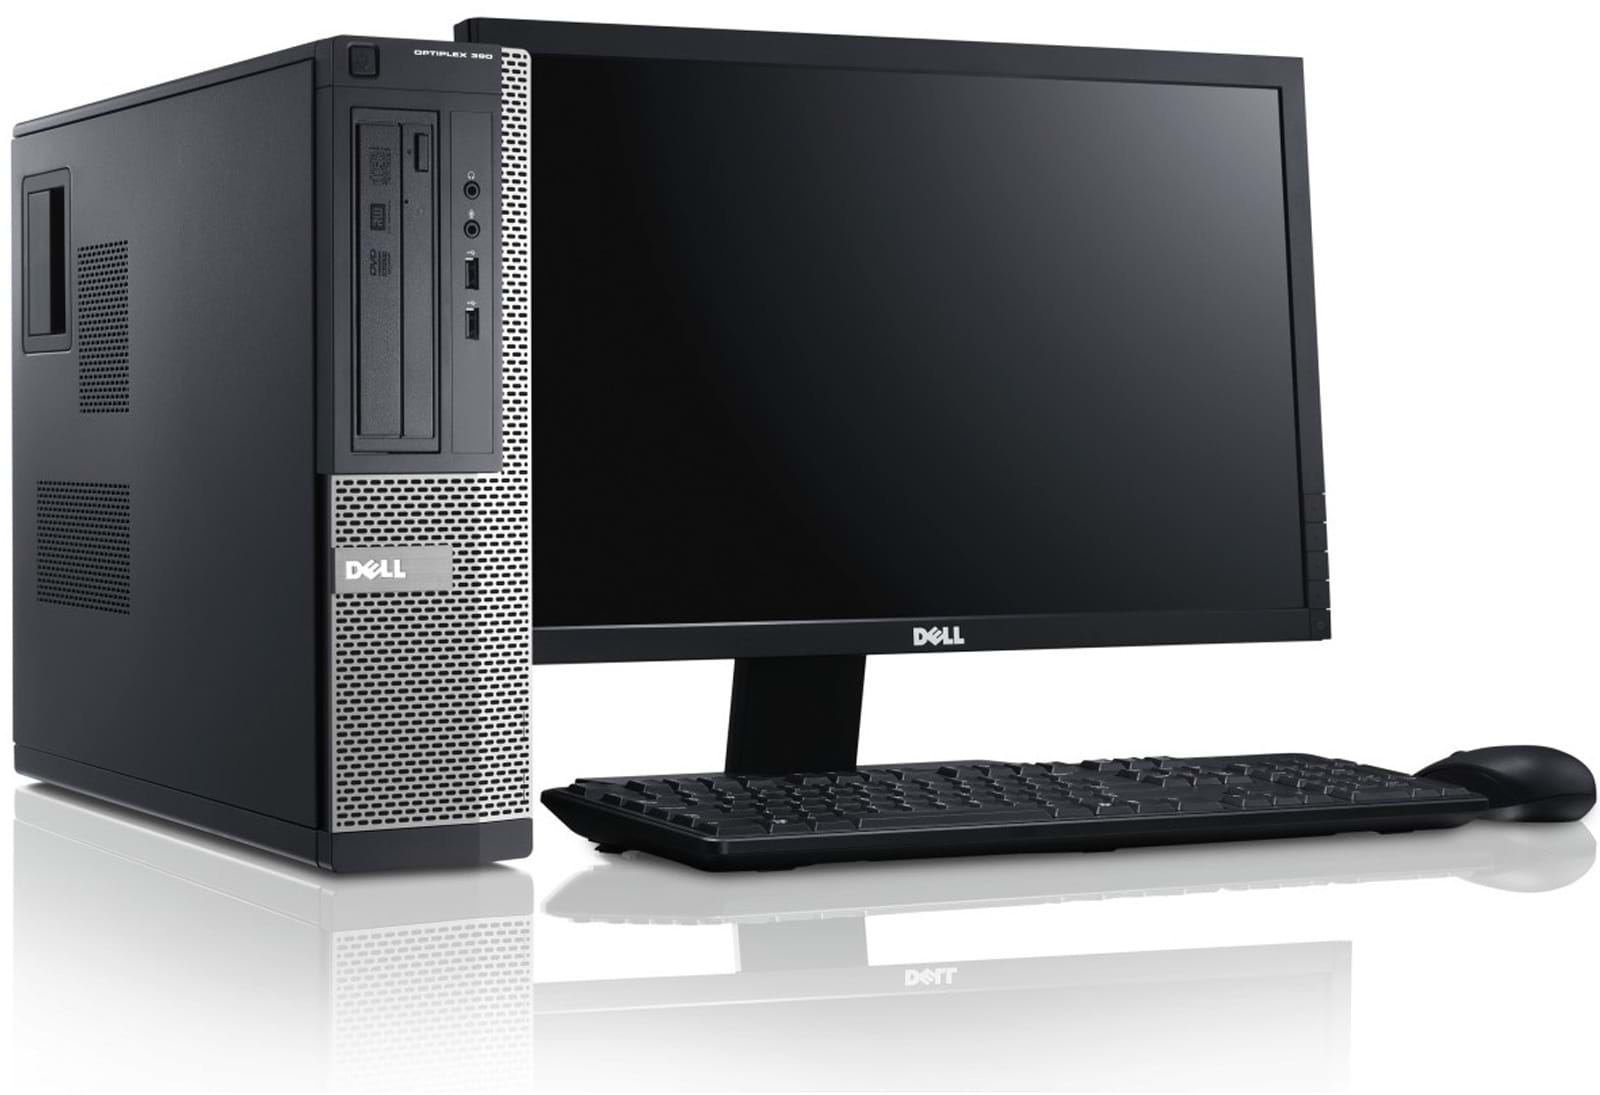 Dell Computer Hardware, Software, Desktops, Workstations, & Servers